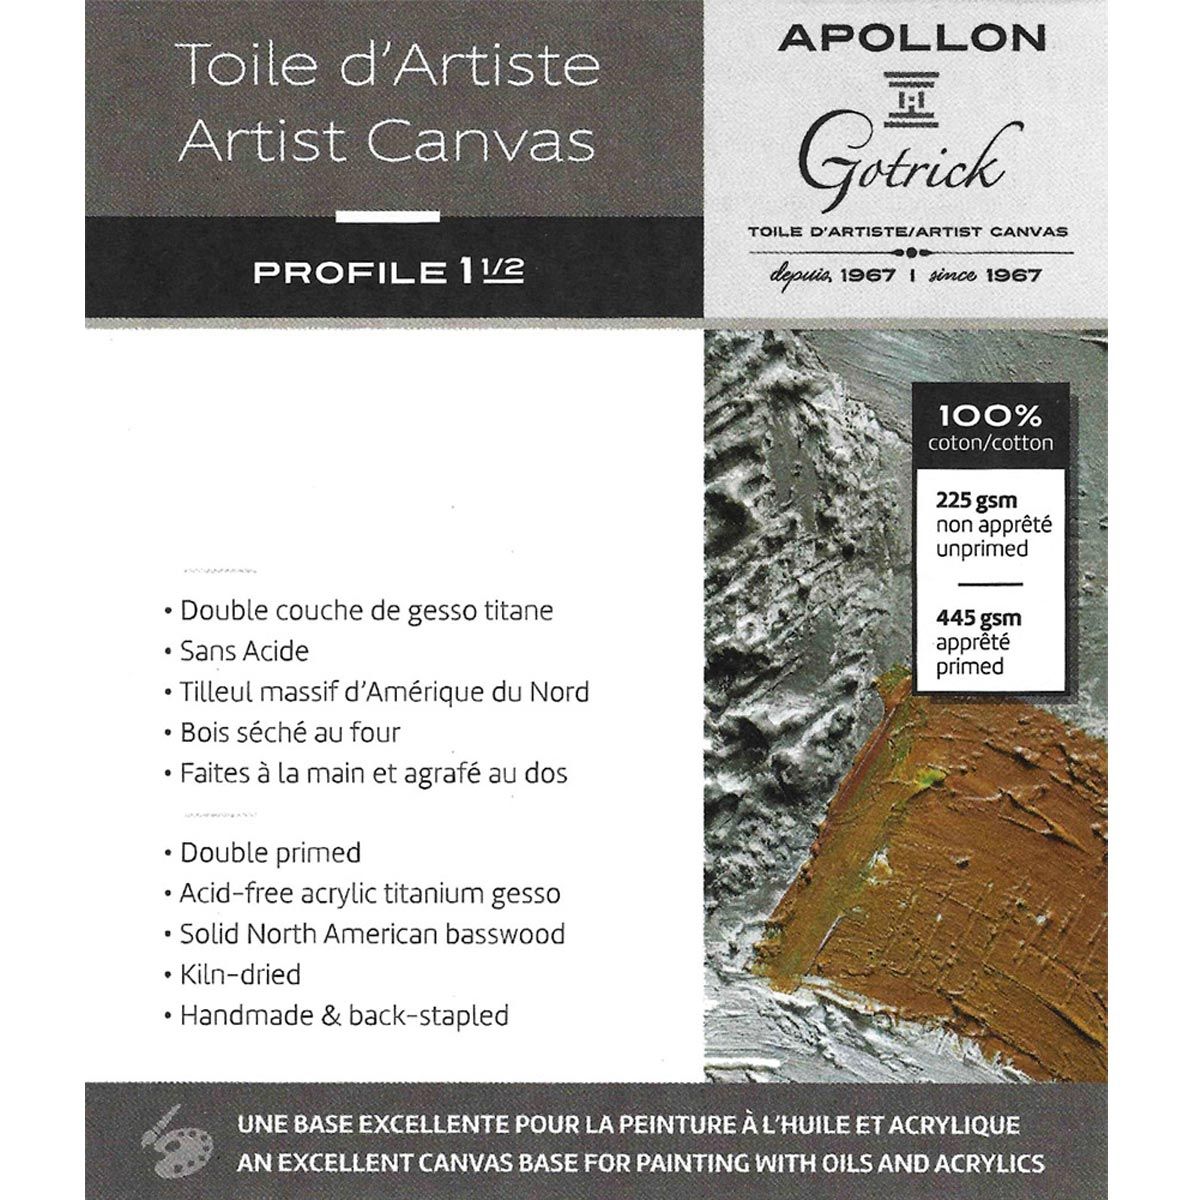 Apollon Gotrick Gallery Artist Canvas Profile 1½" - 16" x 36"